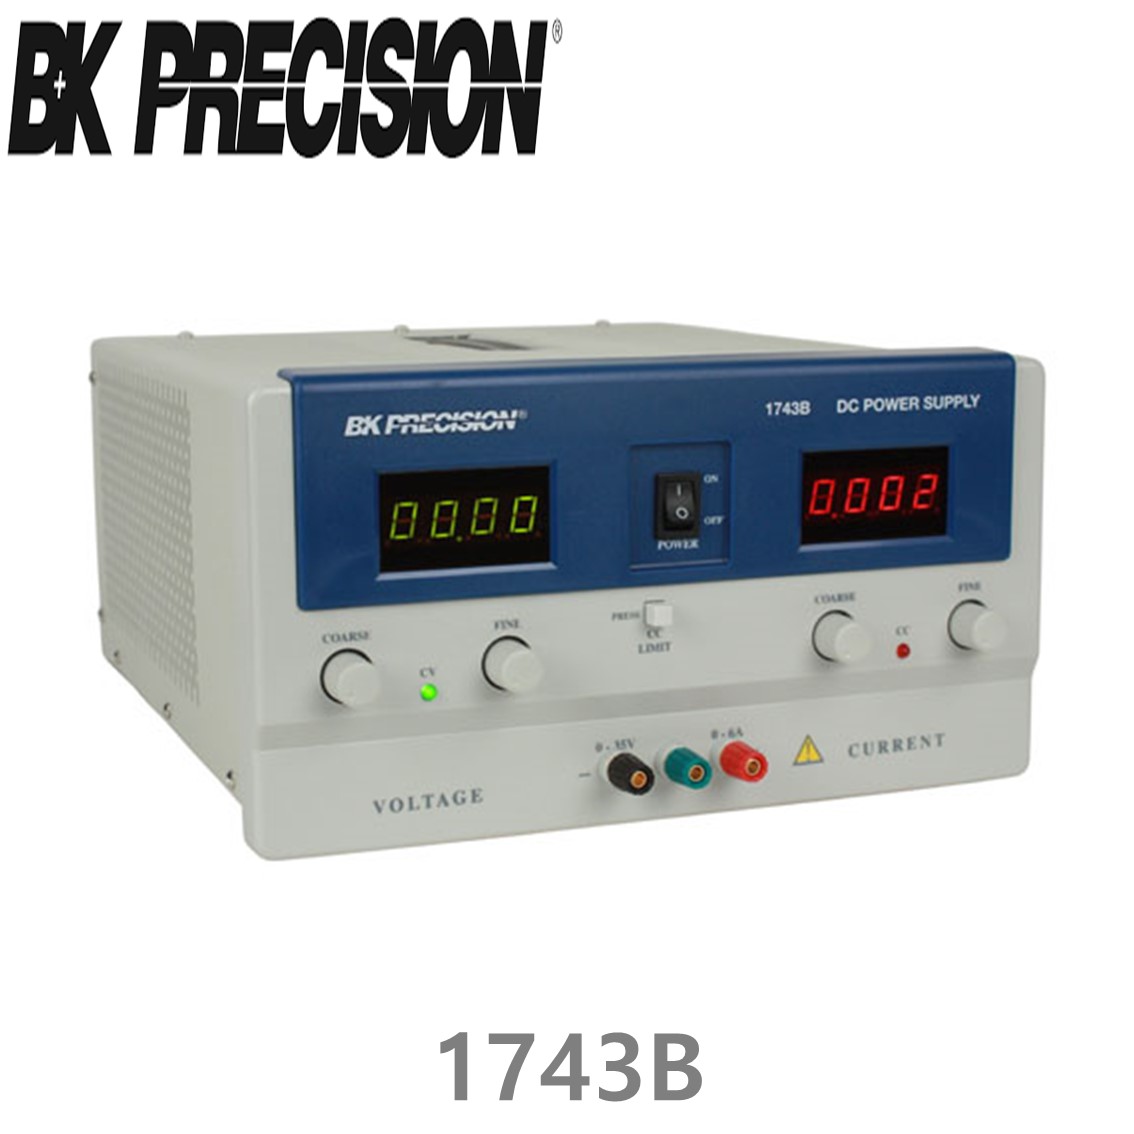 [ BK PRECISION ] BK 1743B, 35V/6A, DC Power Supply, 직류 전원공급기, B&K 1743B